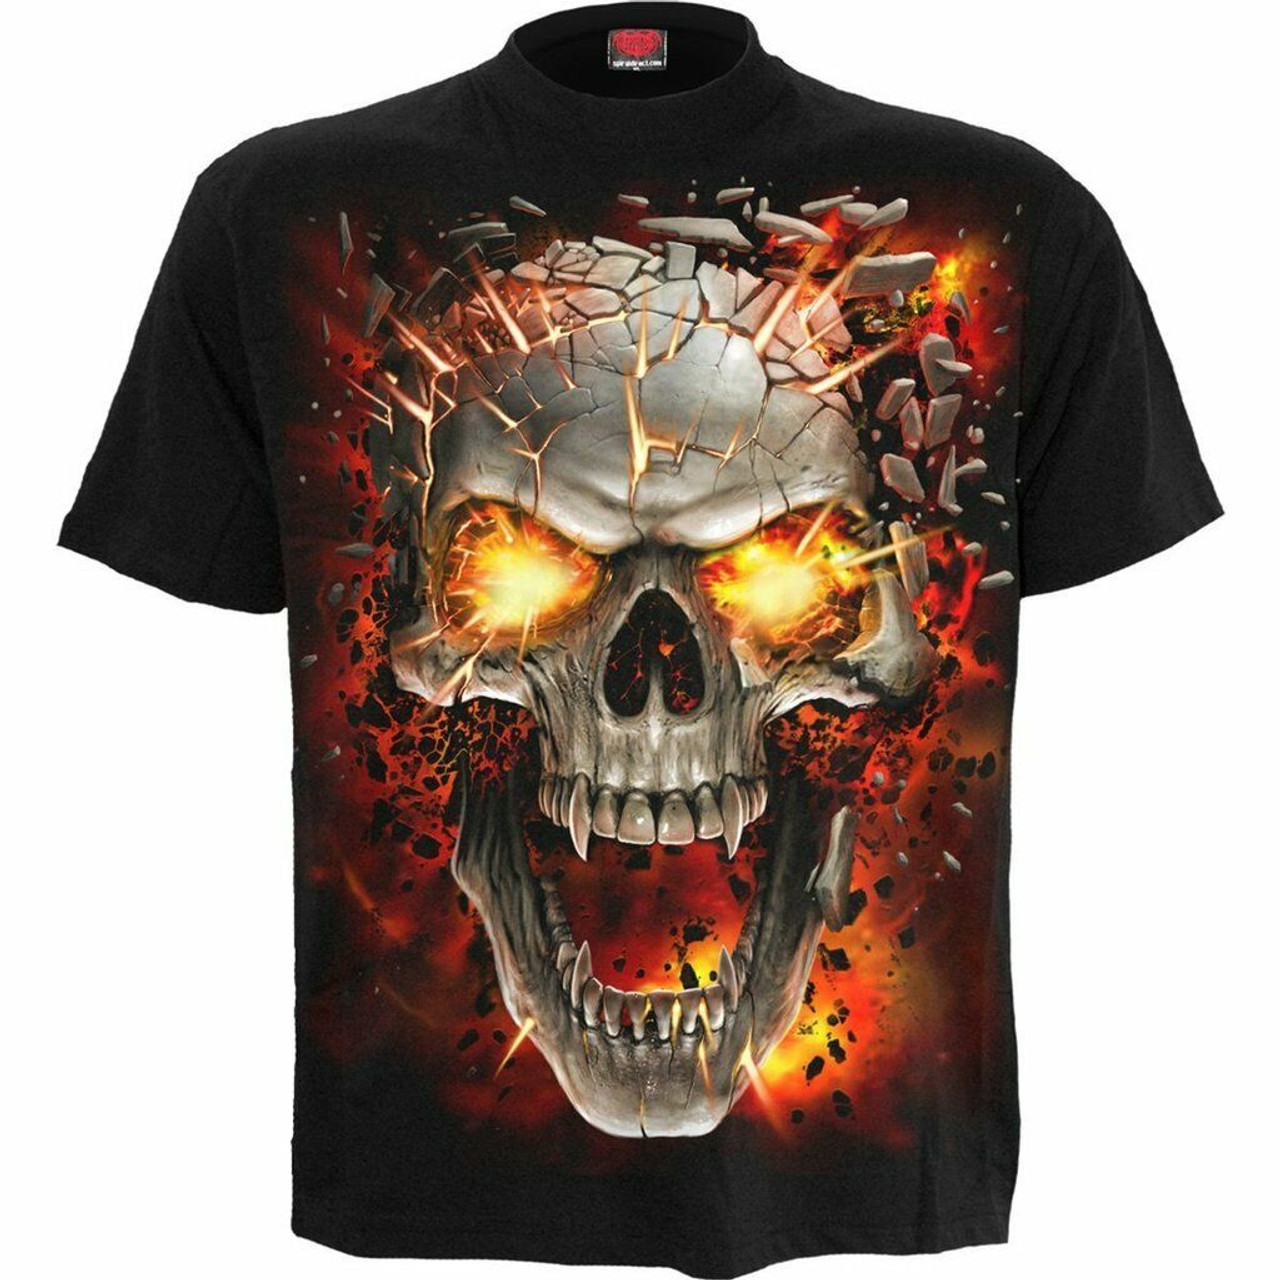 Flaming Skull printed T-shirt